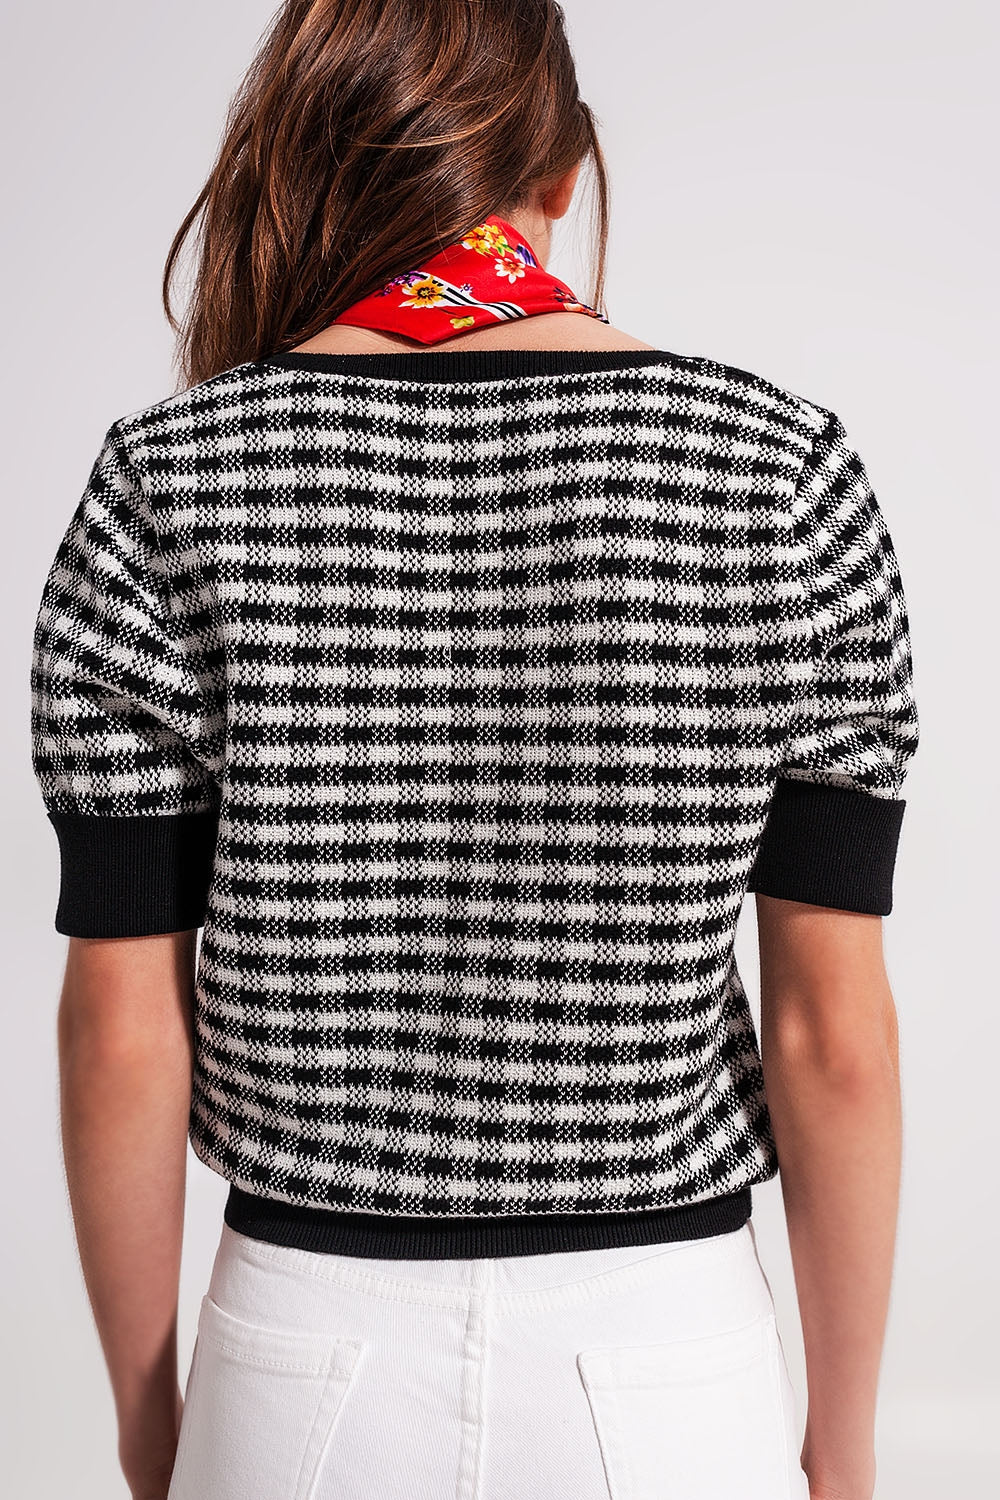 Doris Square Neck Jumper Sweater in Black and White Check | Q2